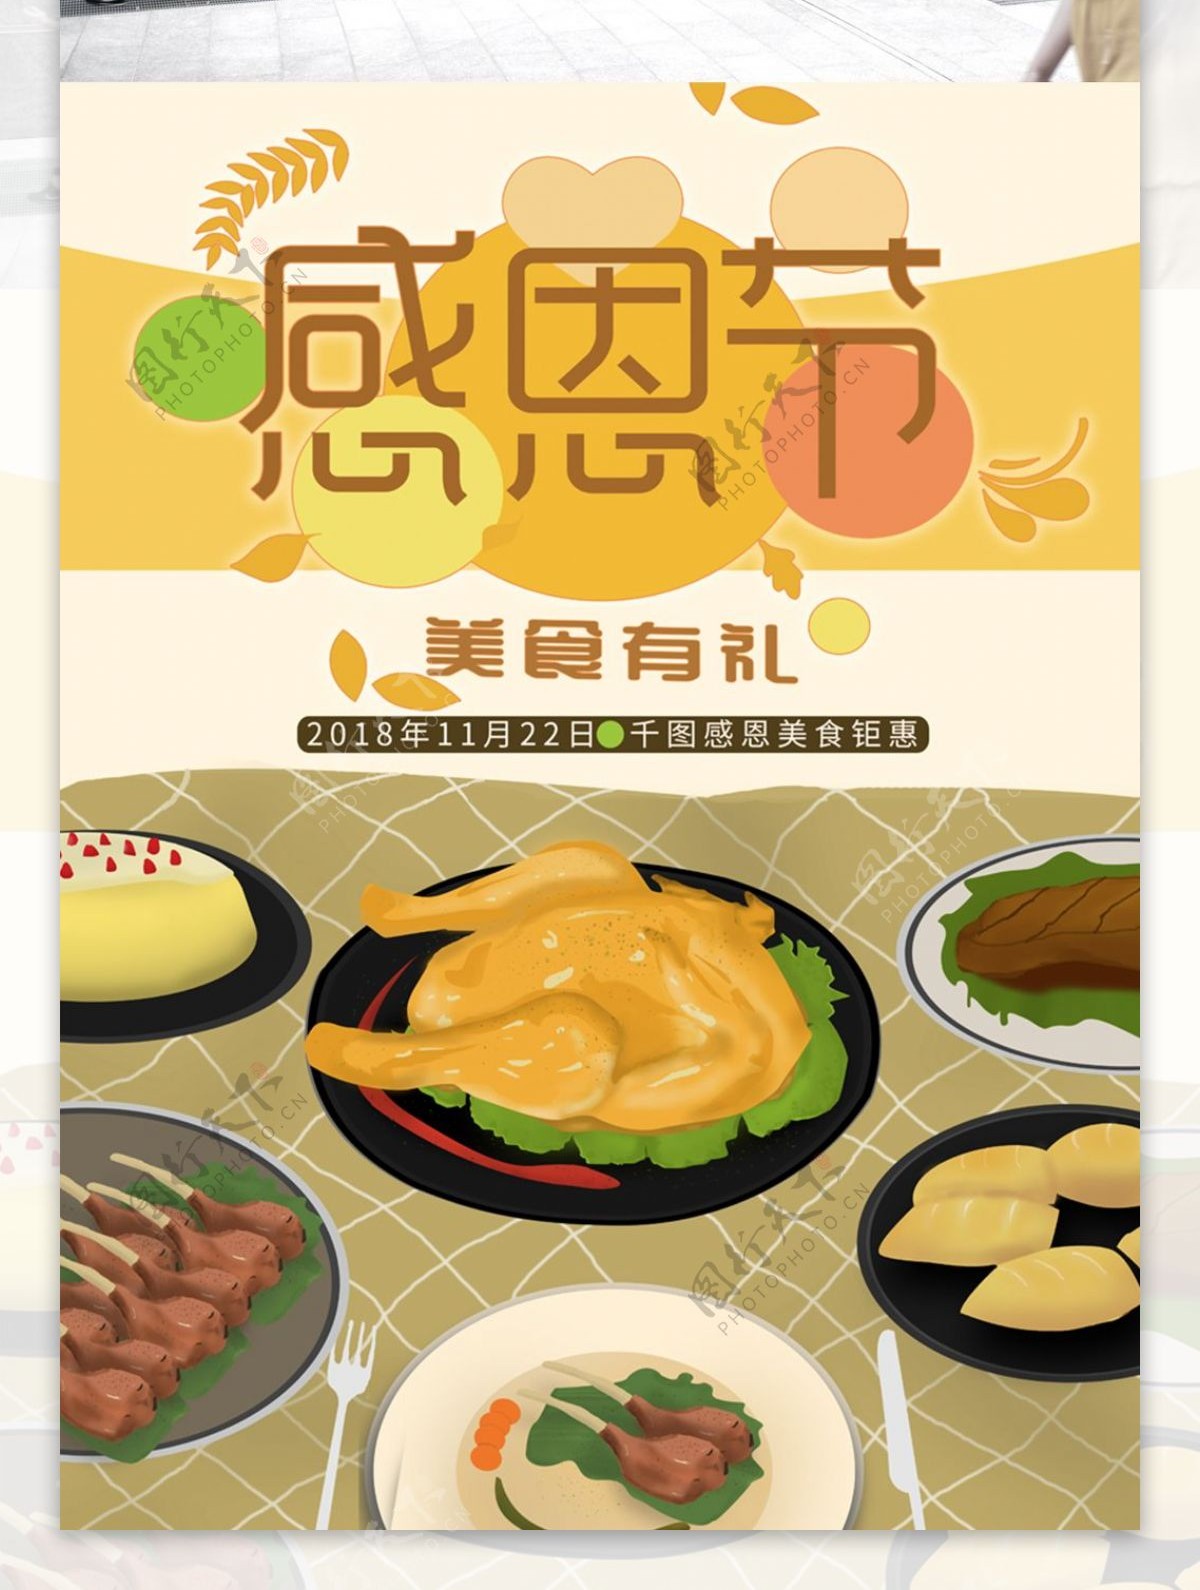 感恩节原创手绘美食海报